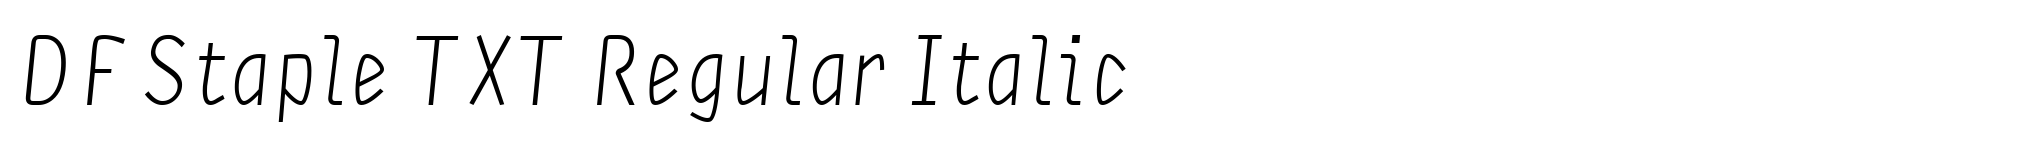 DF Staple TXT Regular Italic image